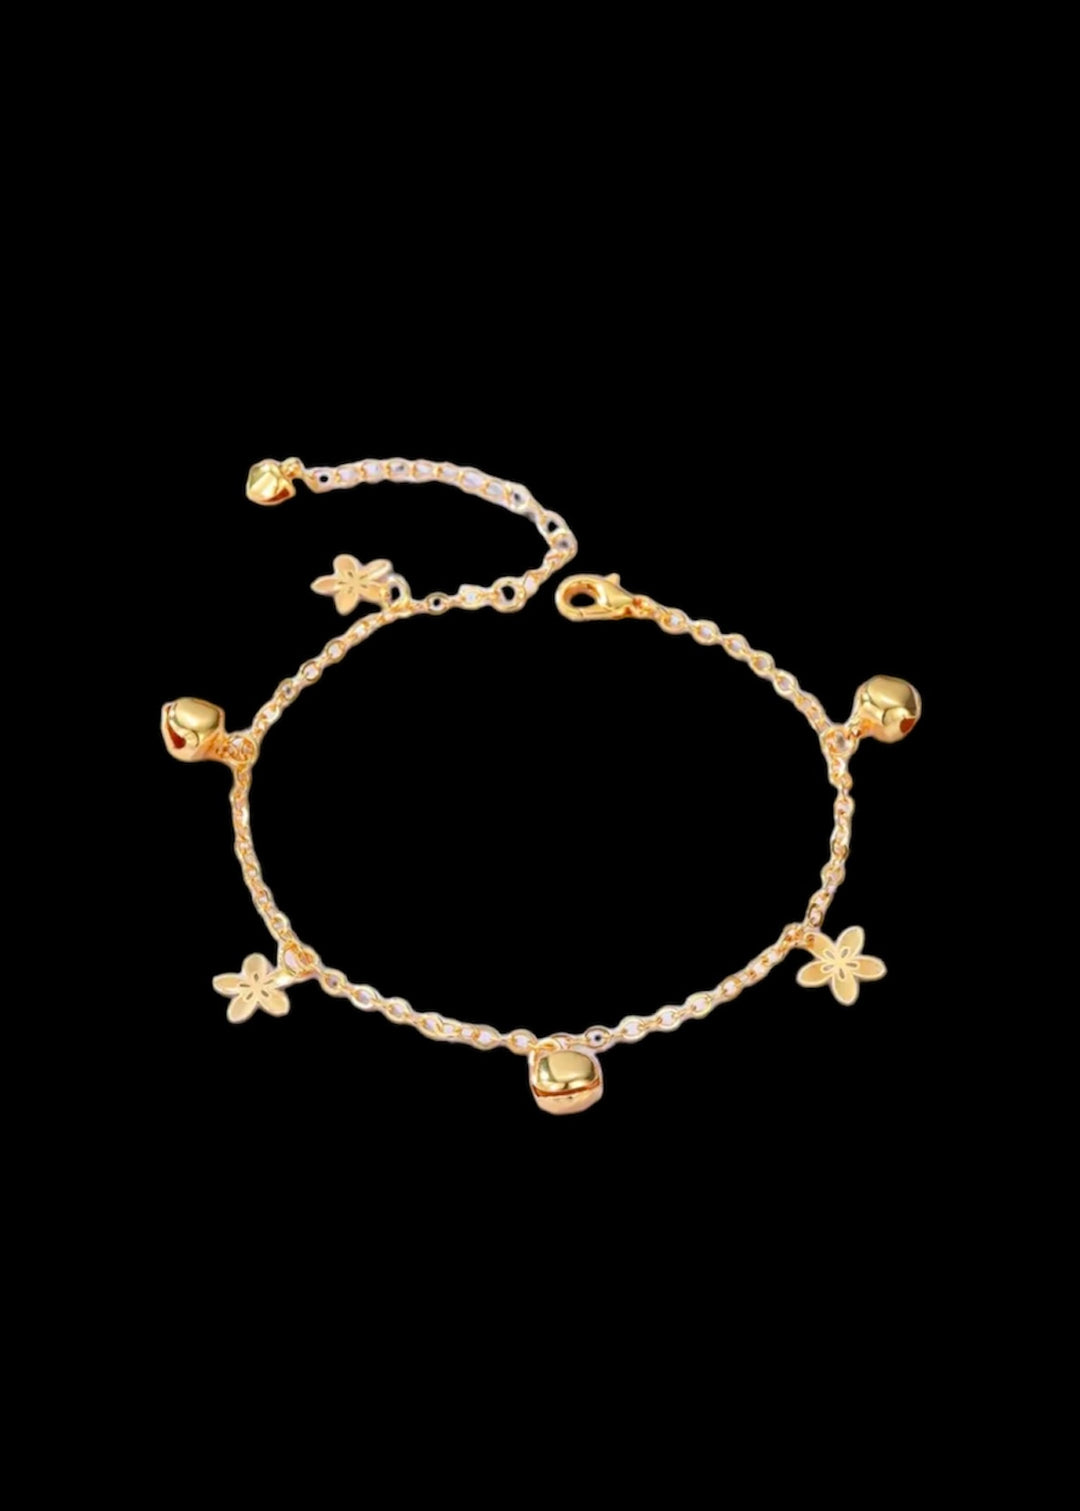 Plum Flower Bell Shape Pendant Thin Chain Anklet 18K Gold Plated Copper Ankle Bracelet